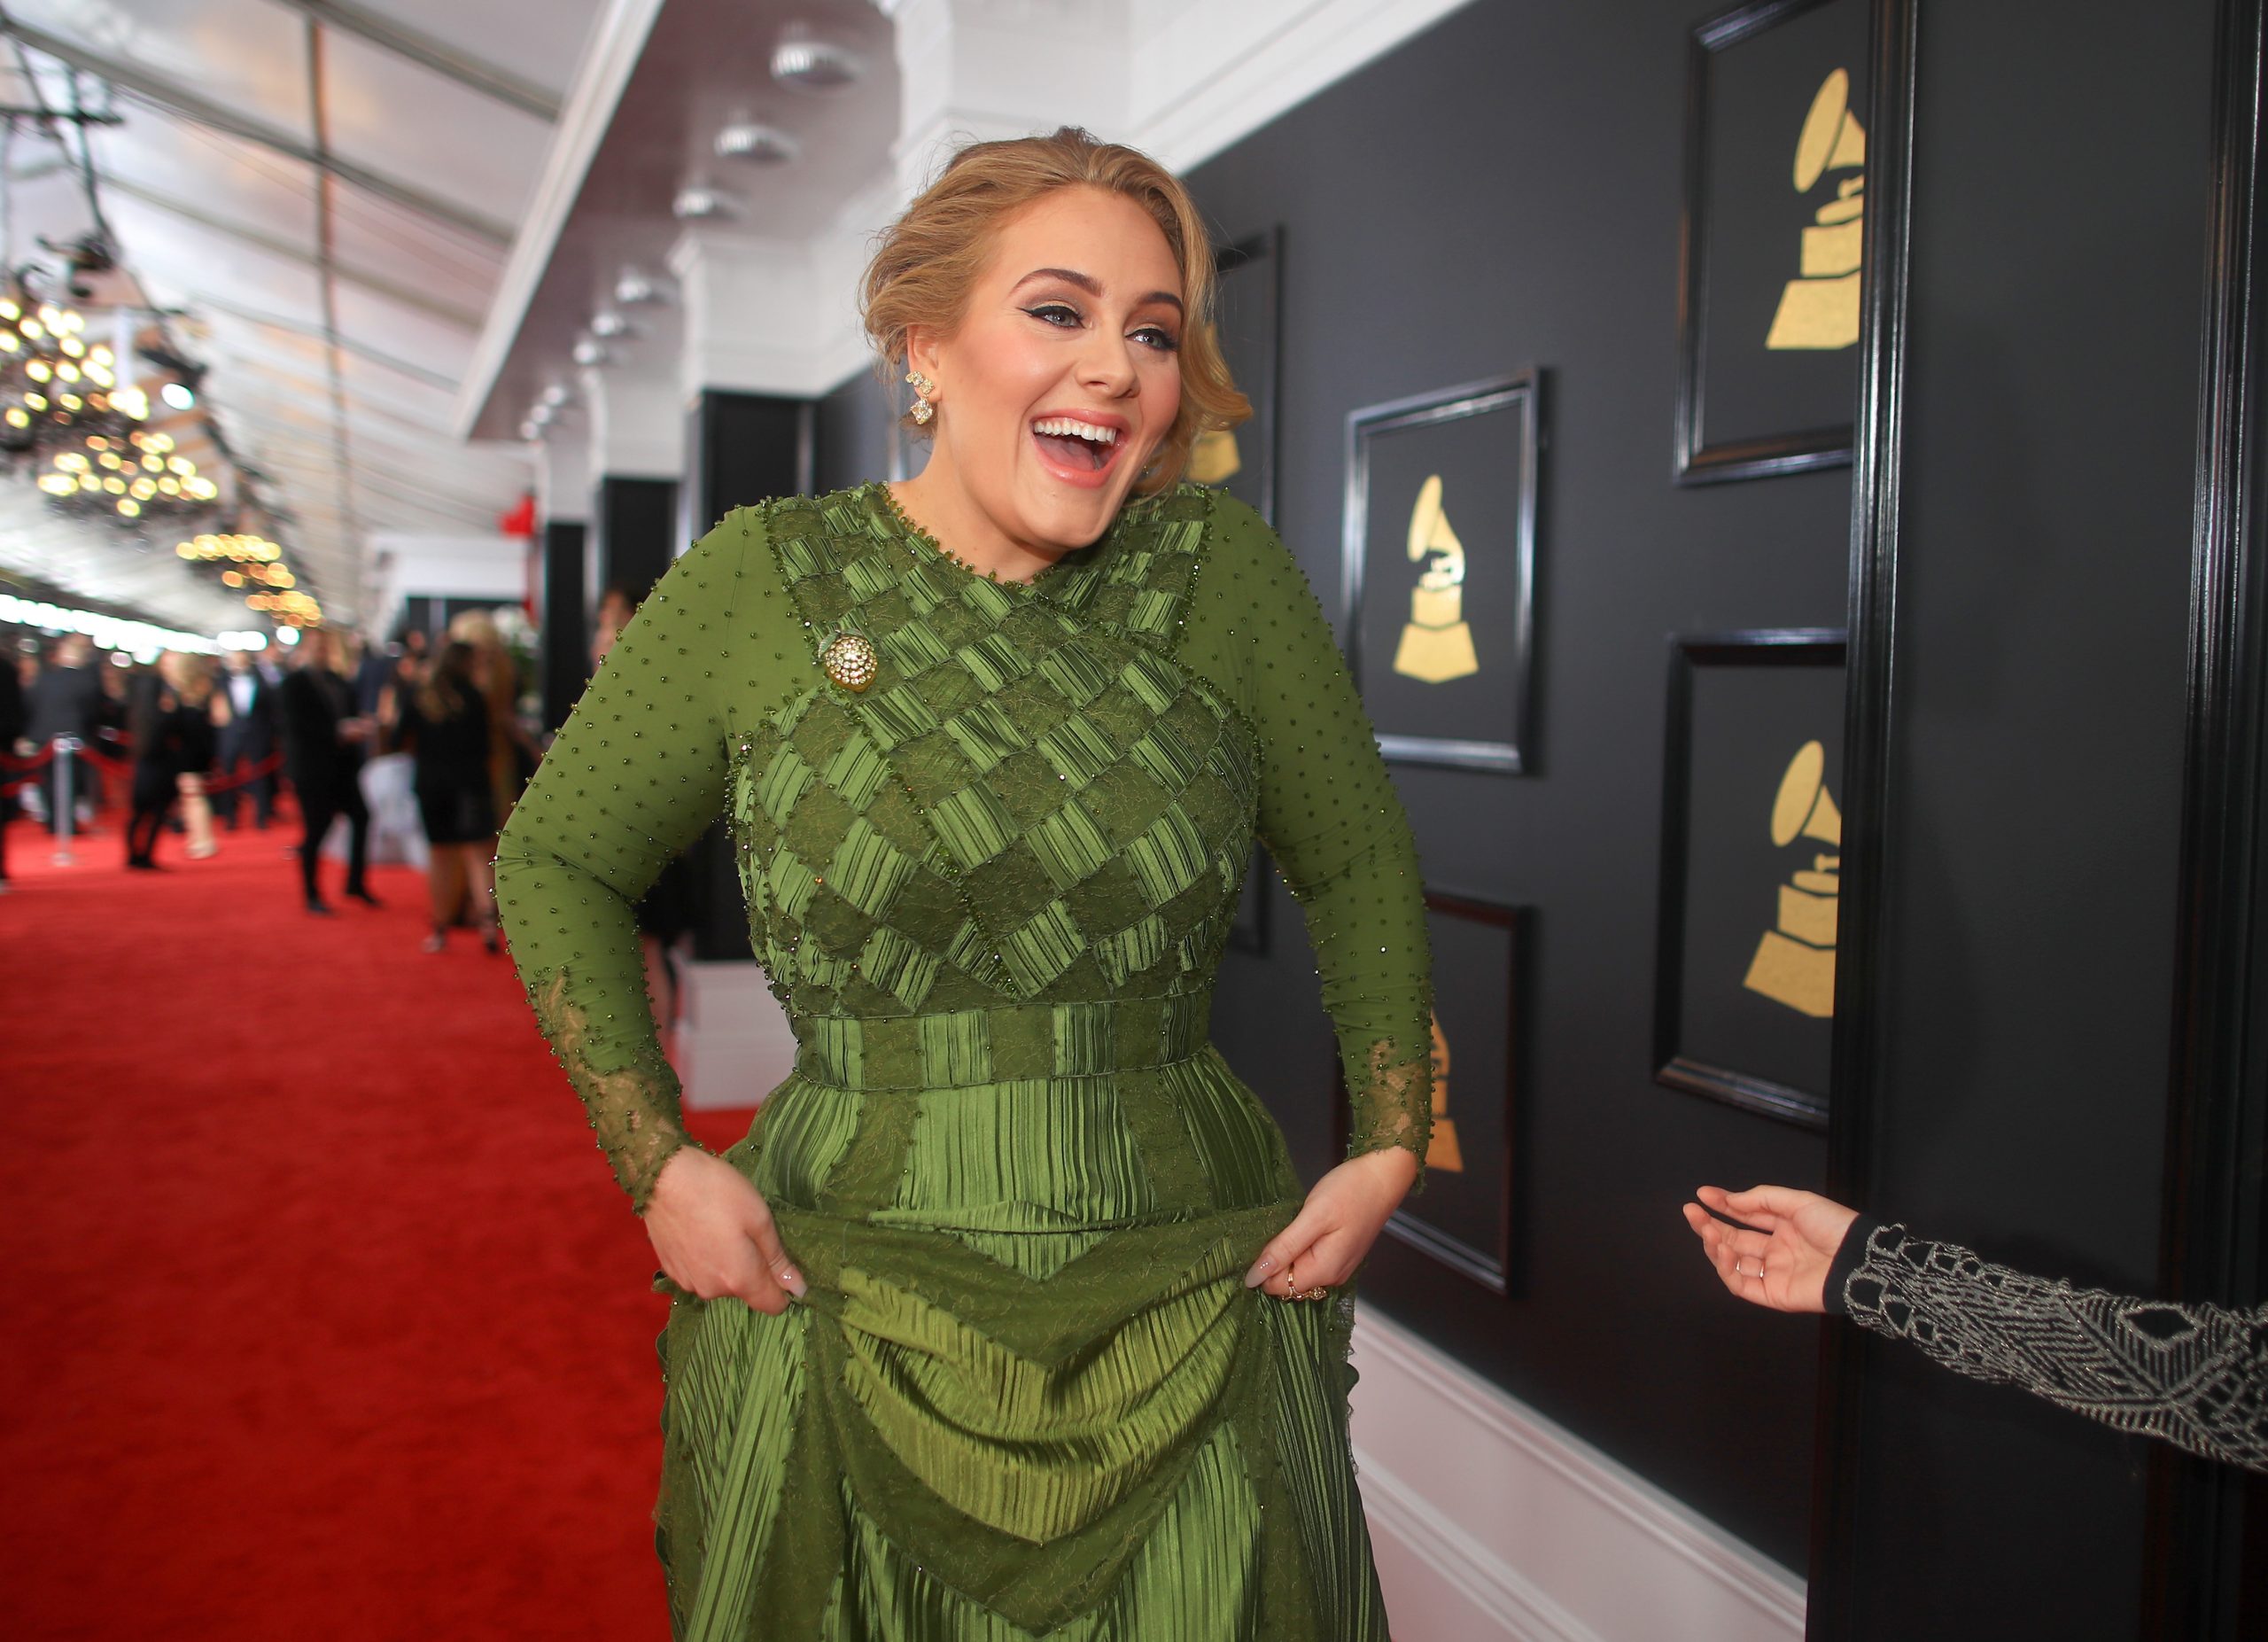 Adele pe covorul roșu la cea de-a 59-a ediție a Premiilor Grammy, 2017. Ea a purtat o rochie verde, lungă, mulată, și și-a prins părul în partea stângă